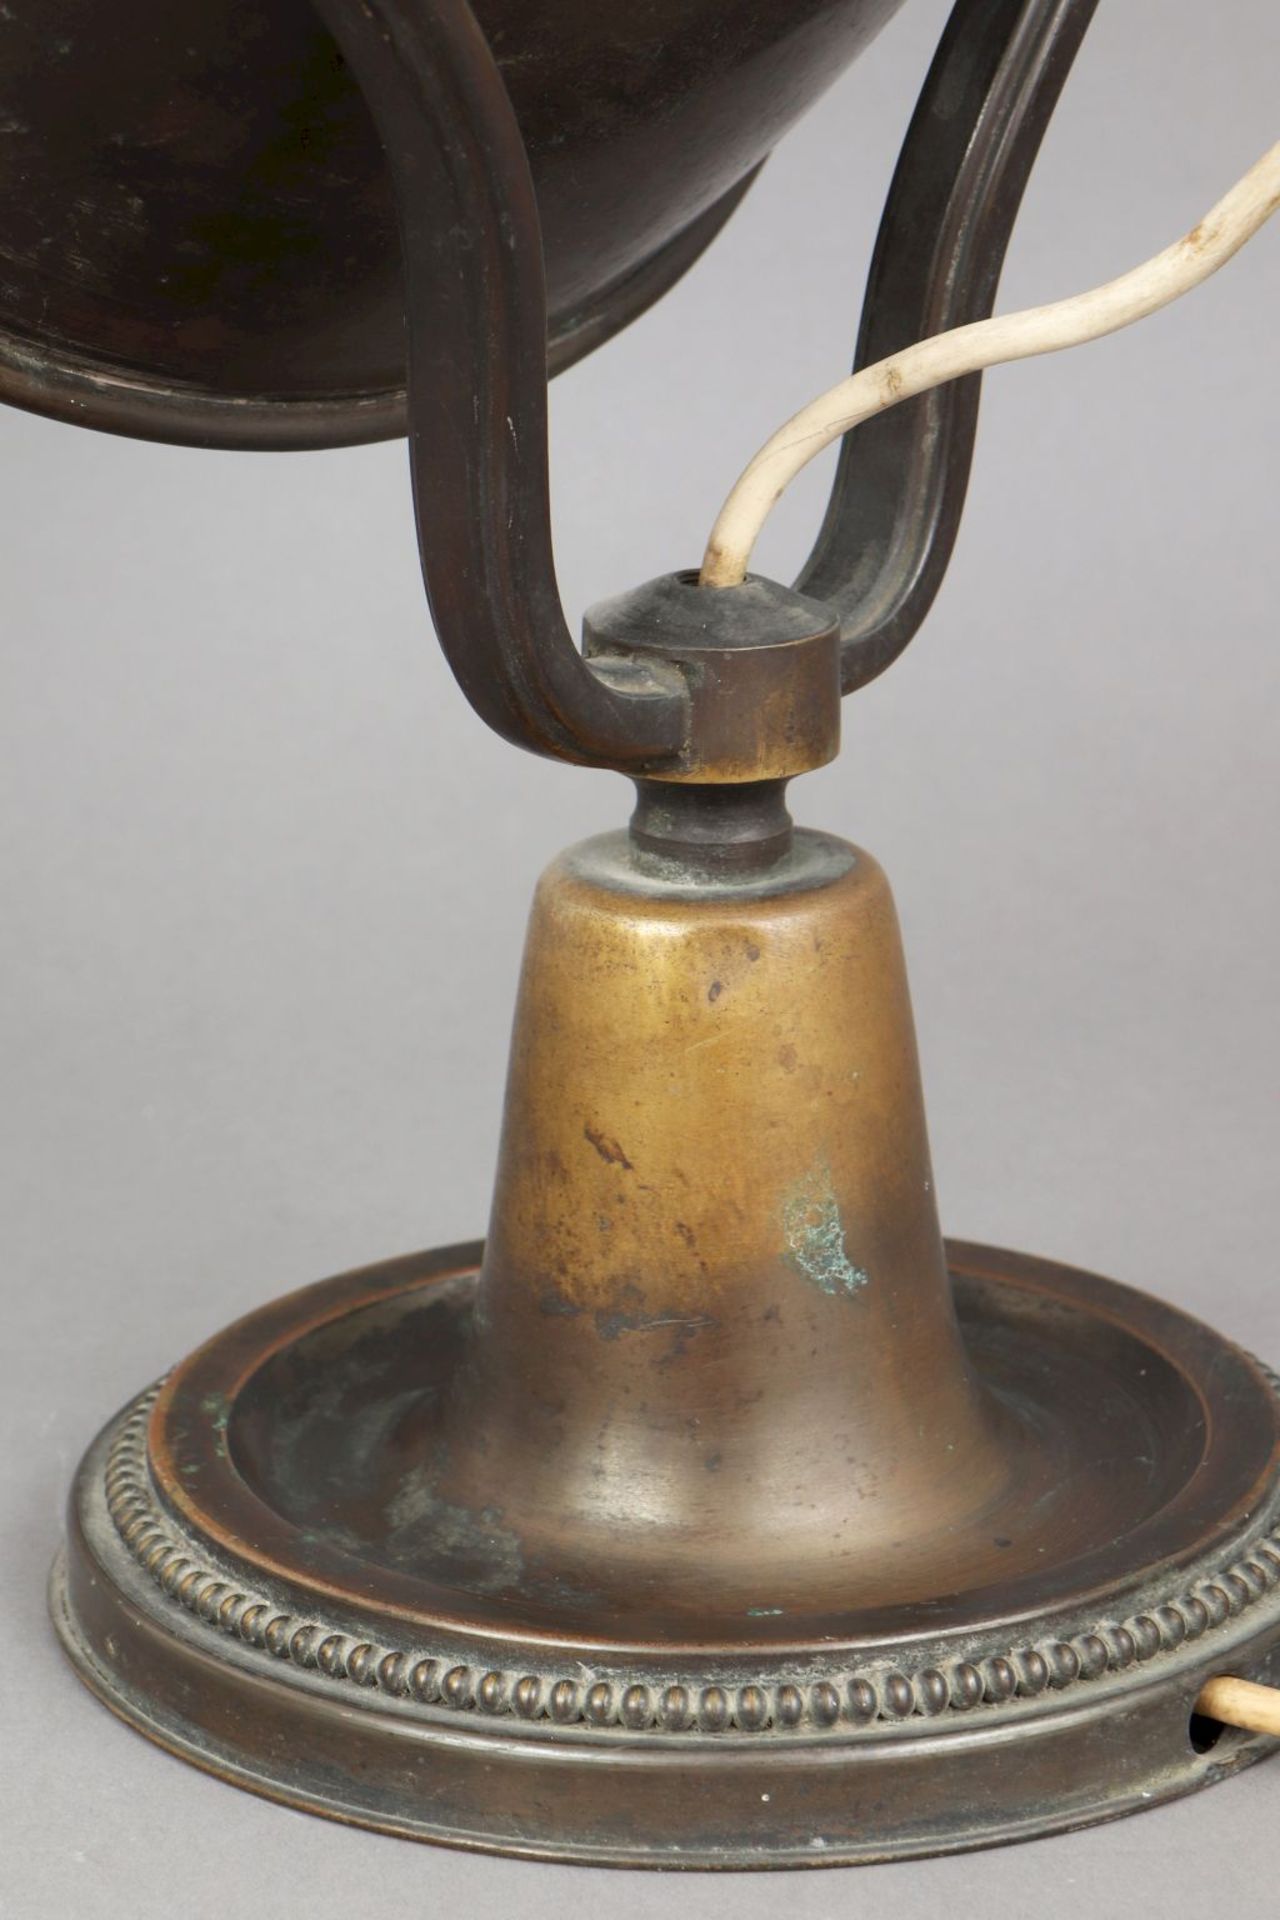 Tischlampe der 1930er JahreMessing, bronziert, trichterförmiger, beweglicher ¨Strahler¨-Schi - Bild 3 aus 4